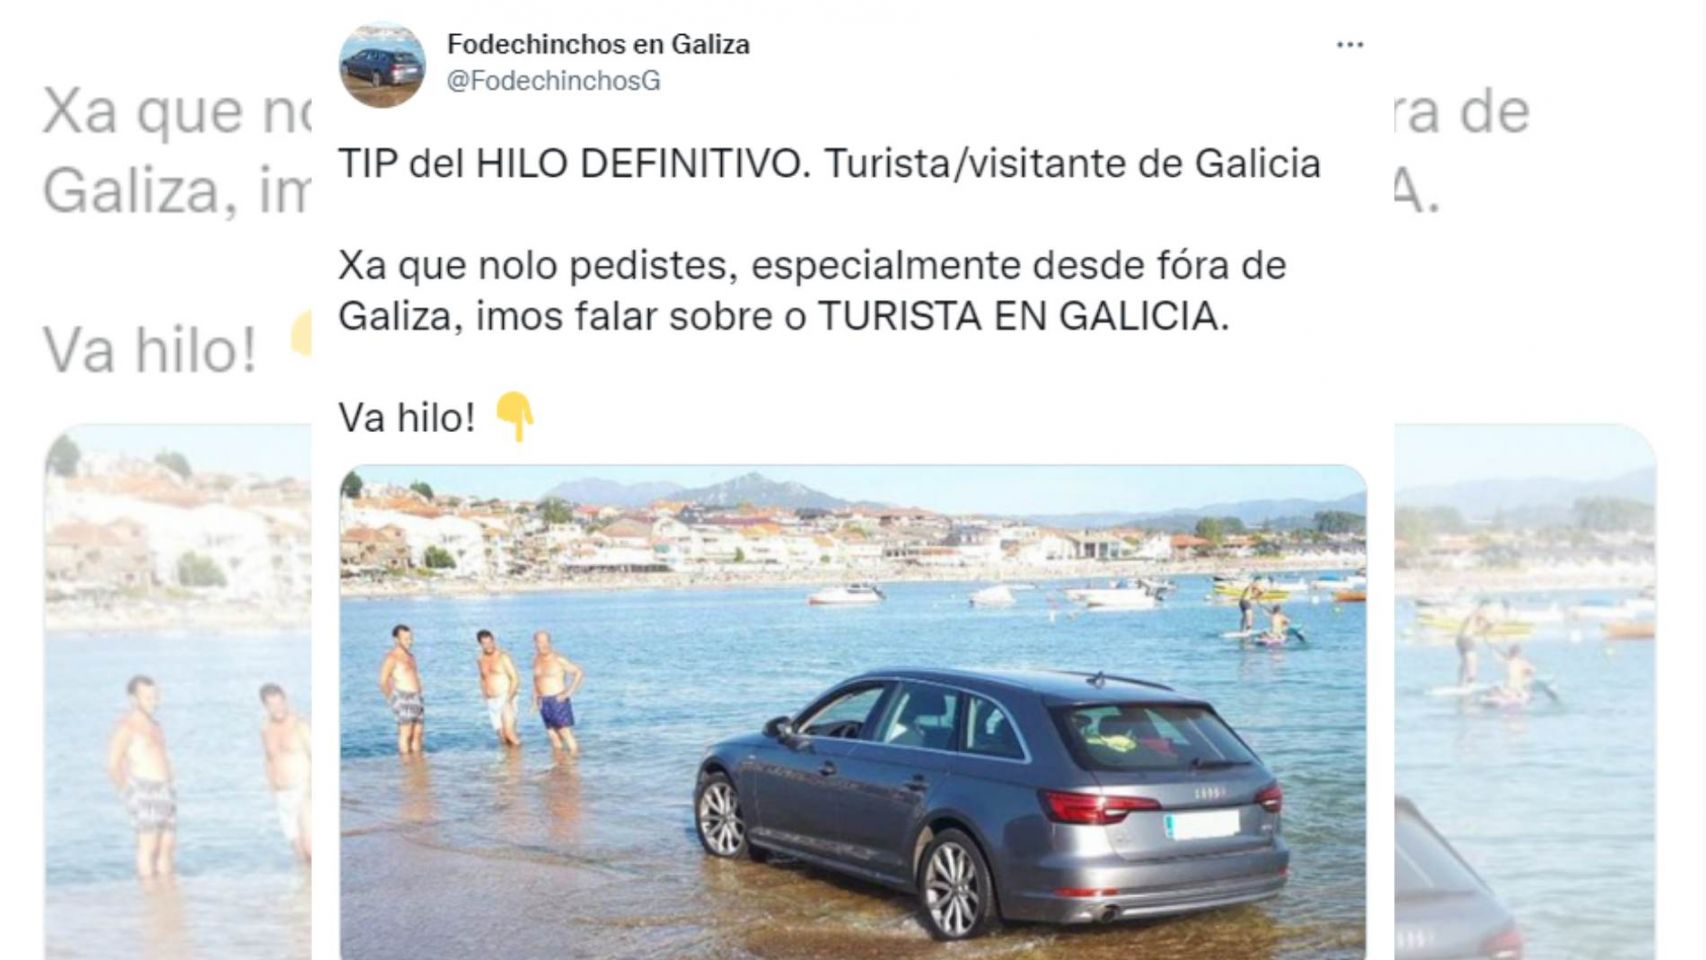 Hilo sobre los tipos de turistas en Galicia.